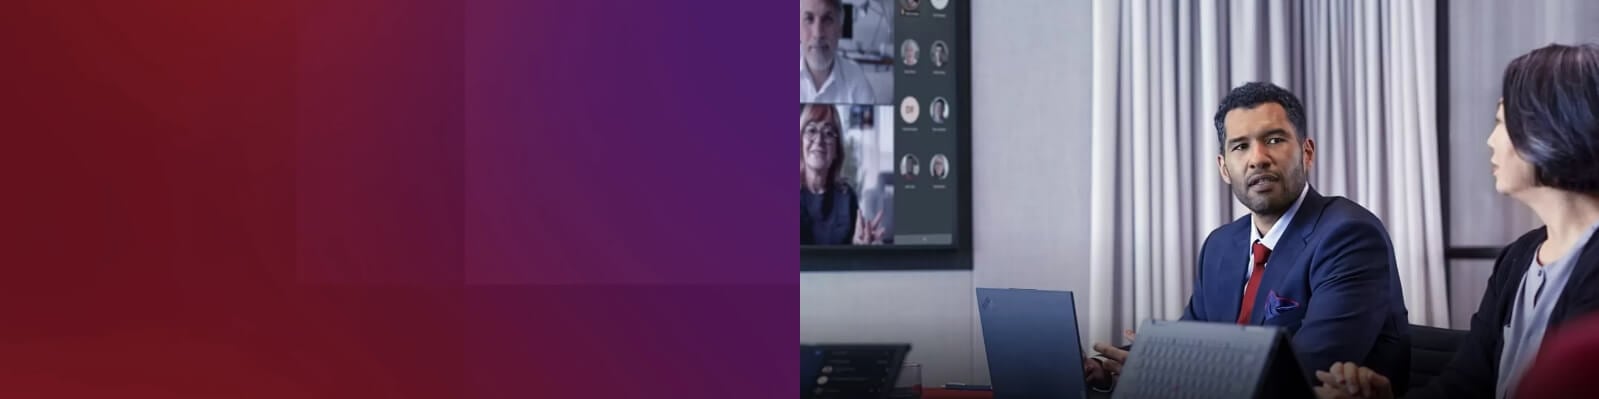 Homme et femme en réunion virtuelle dans une salle de conférence